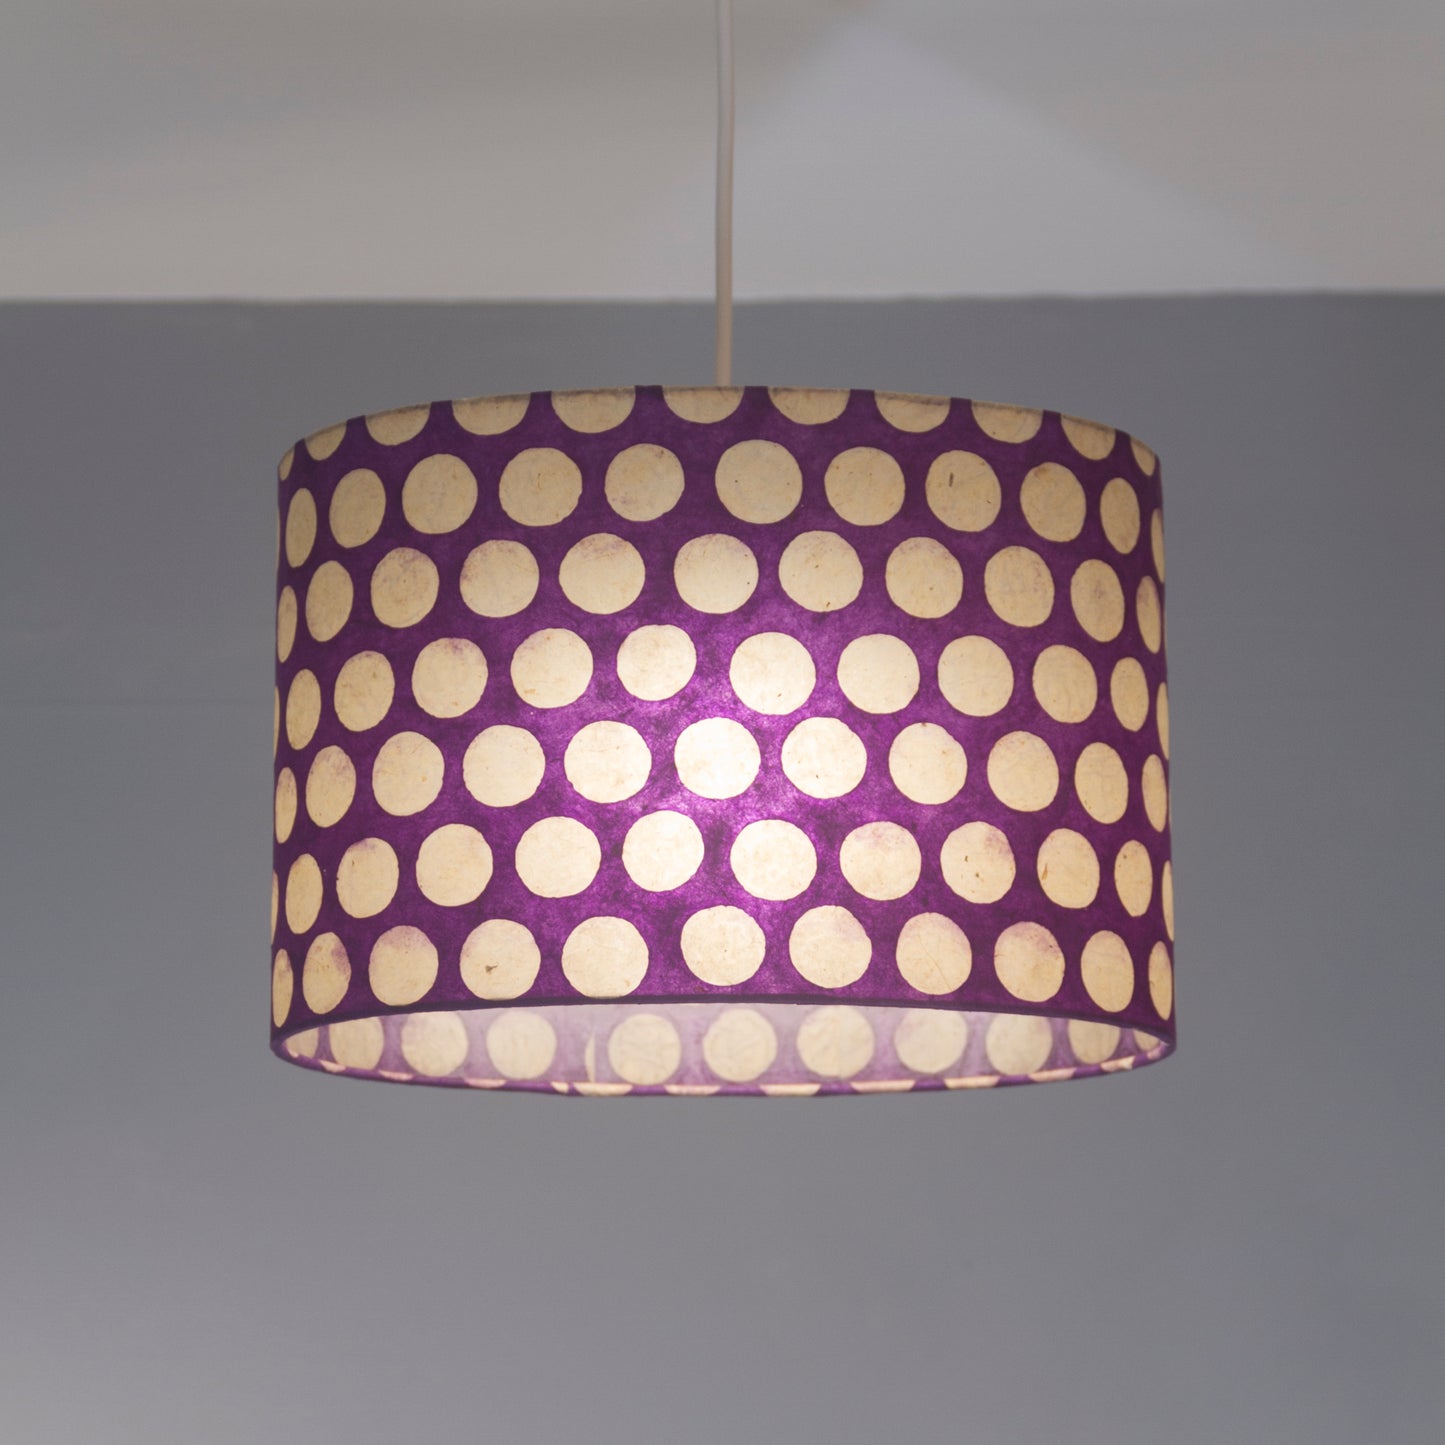 Oval Lamp Shade - P79 - Batik Dots Purple, 40cm(w) x 20cm(h) x 30cm(d)